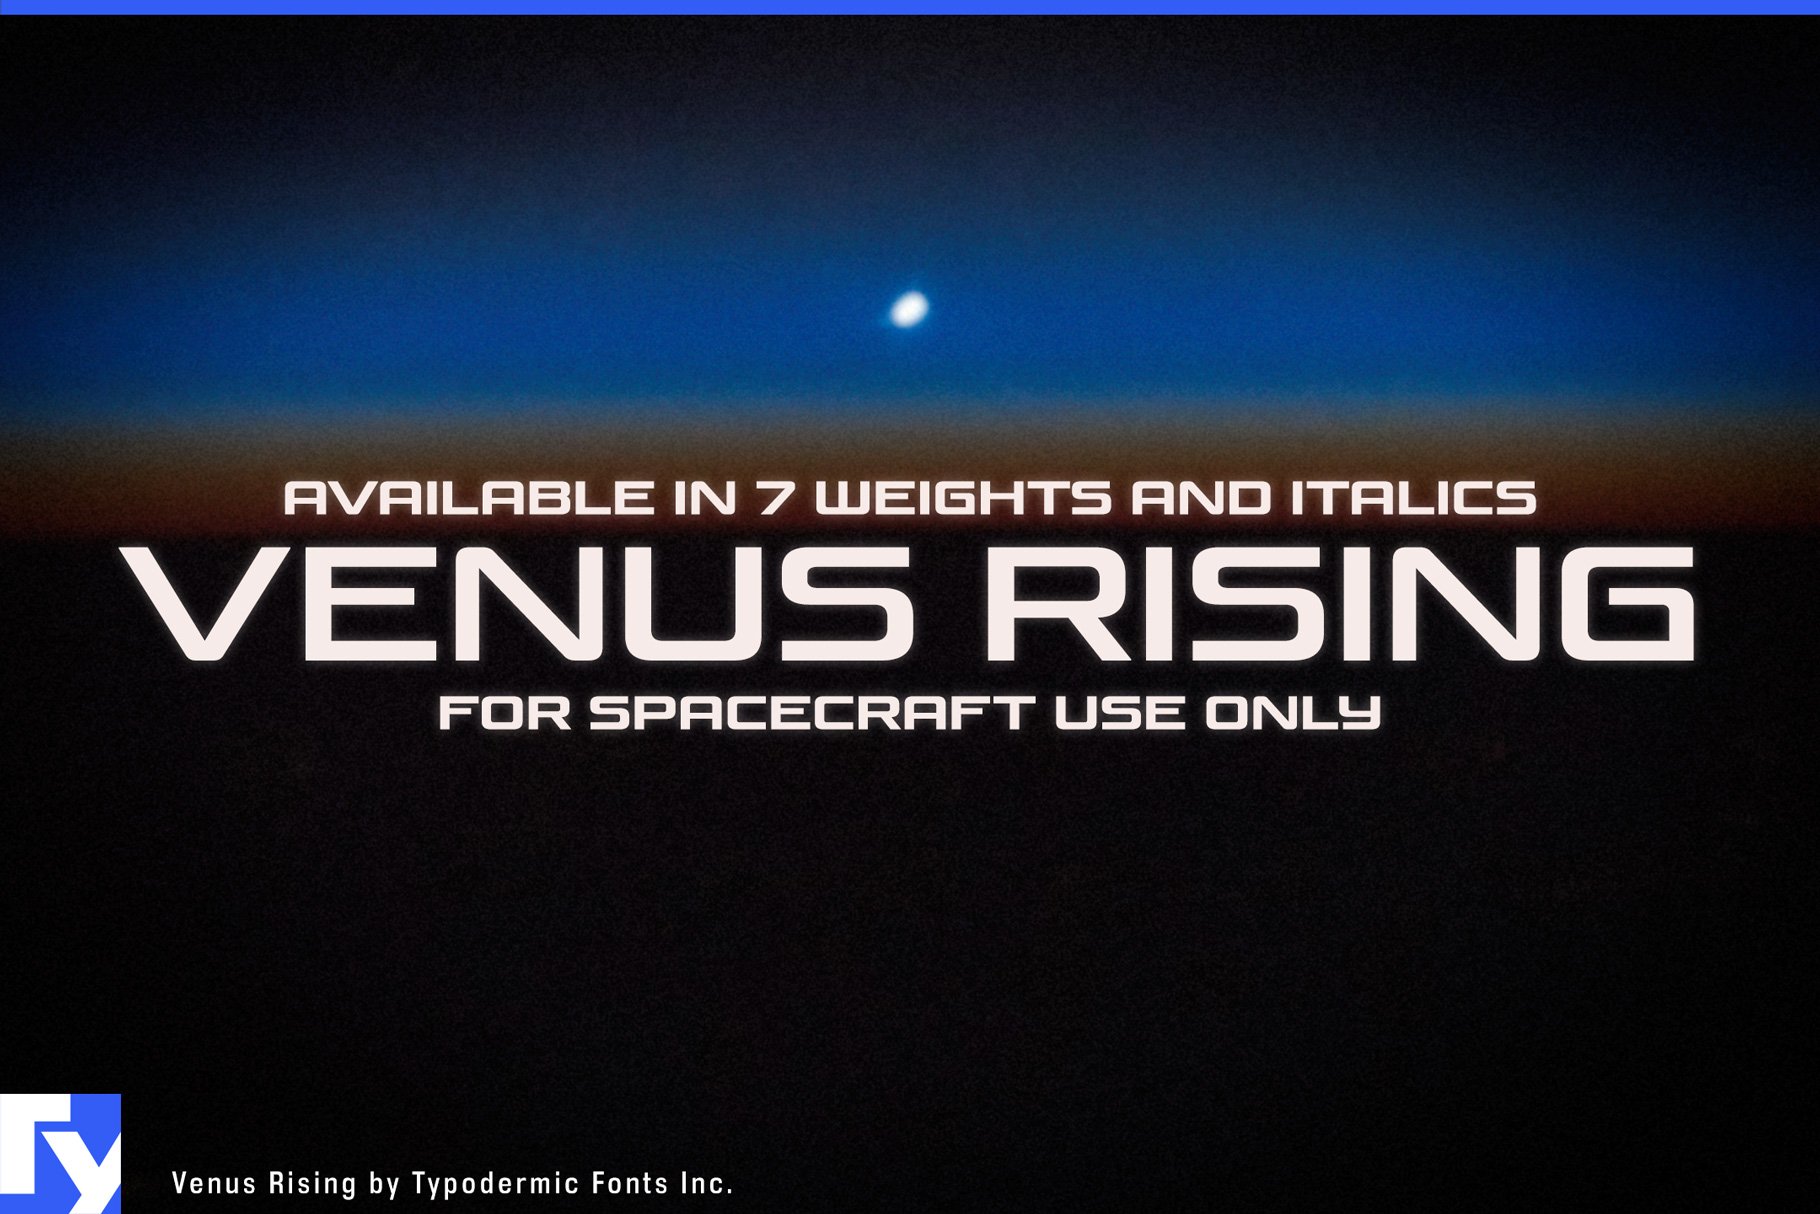 Venus Rising cover image.